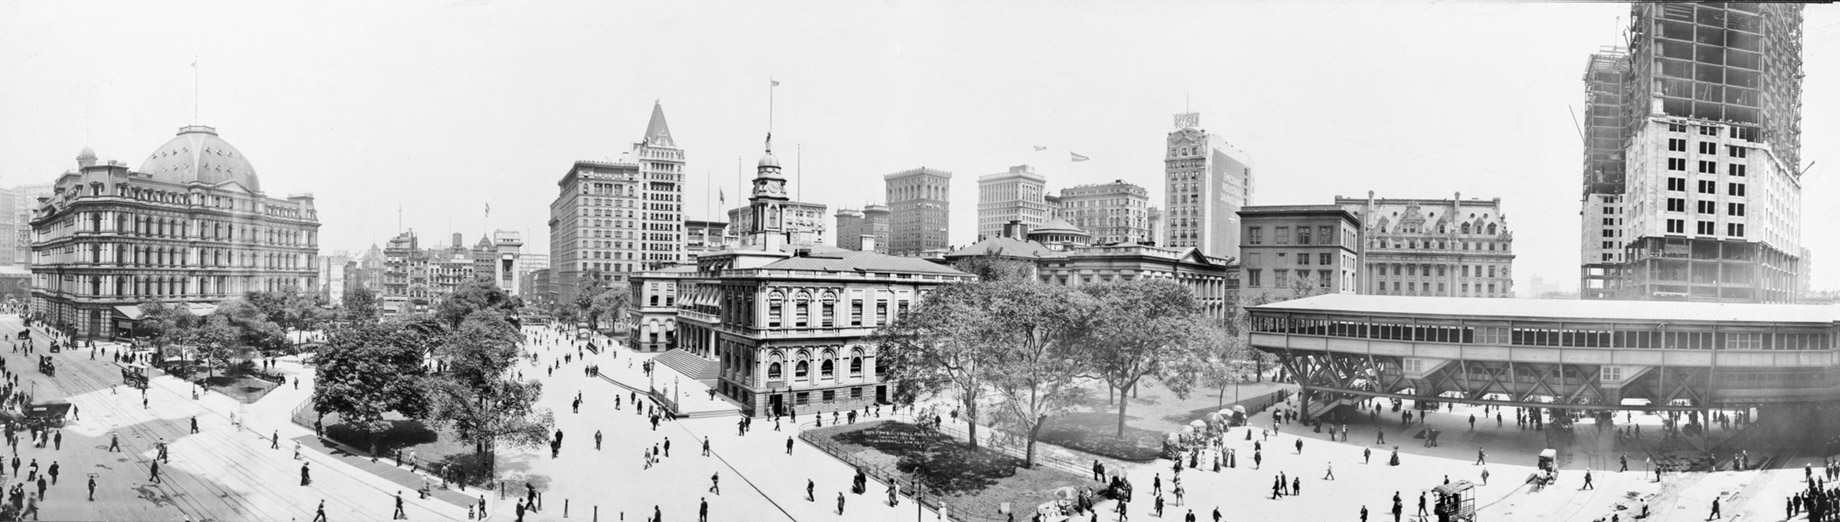 Amazing History - Park Row and City Hall Park, New York, NY, USA